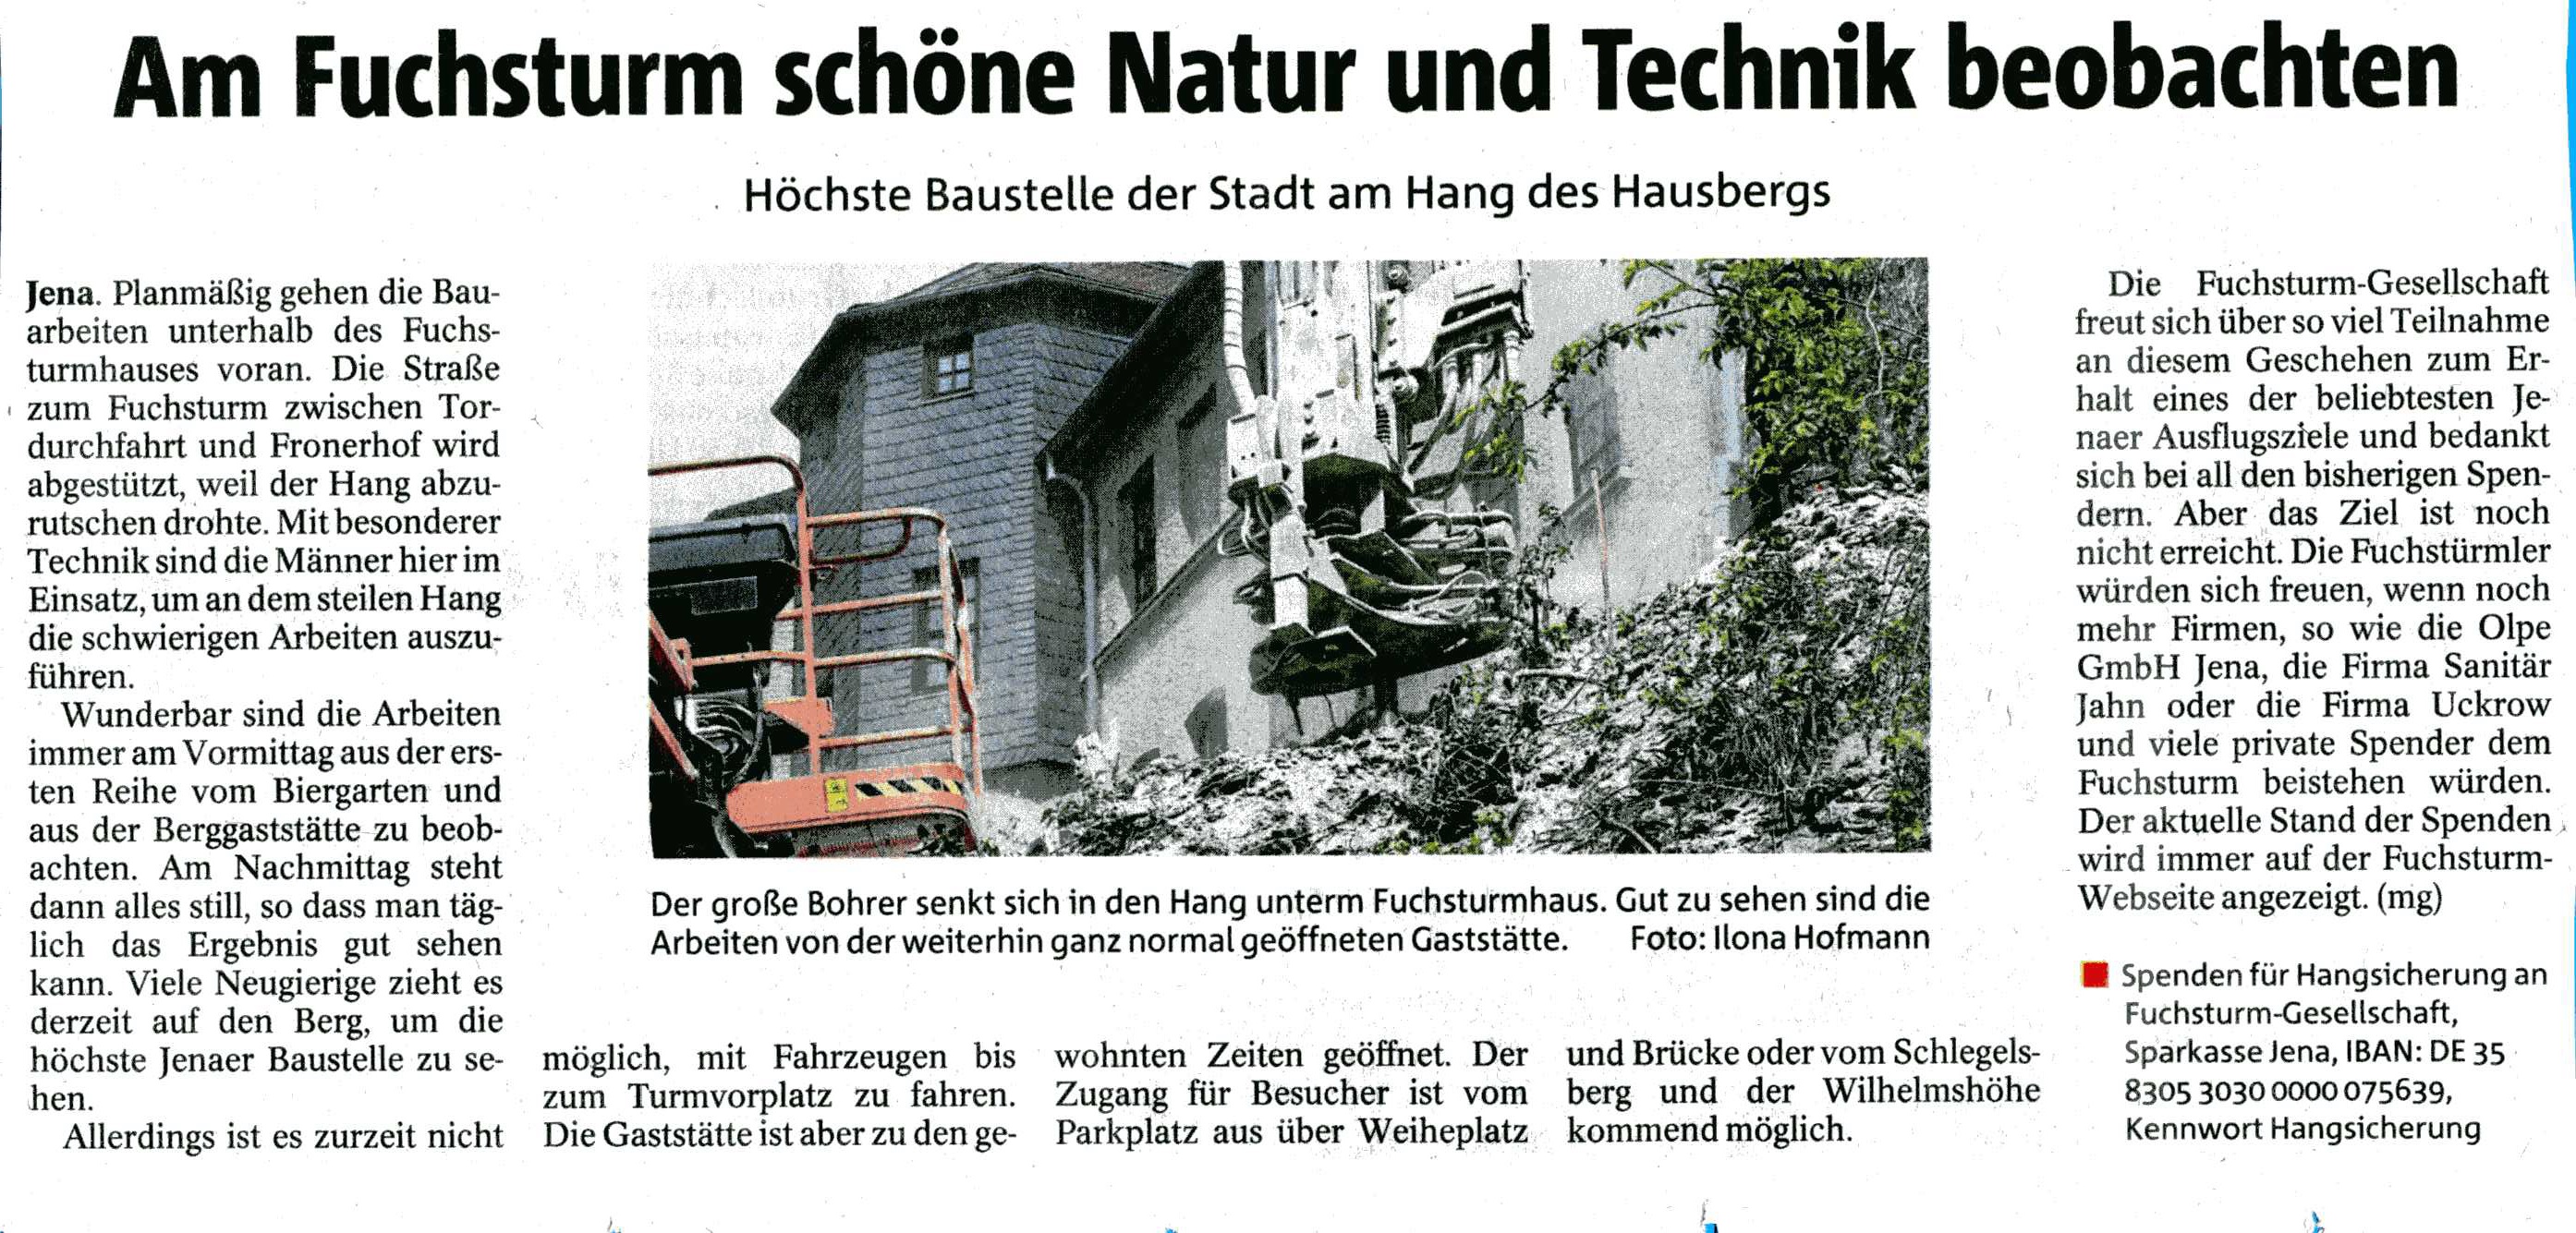 12.05.2017 OTZ Am Fuchsturm schöne Natur und Technik beobachten